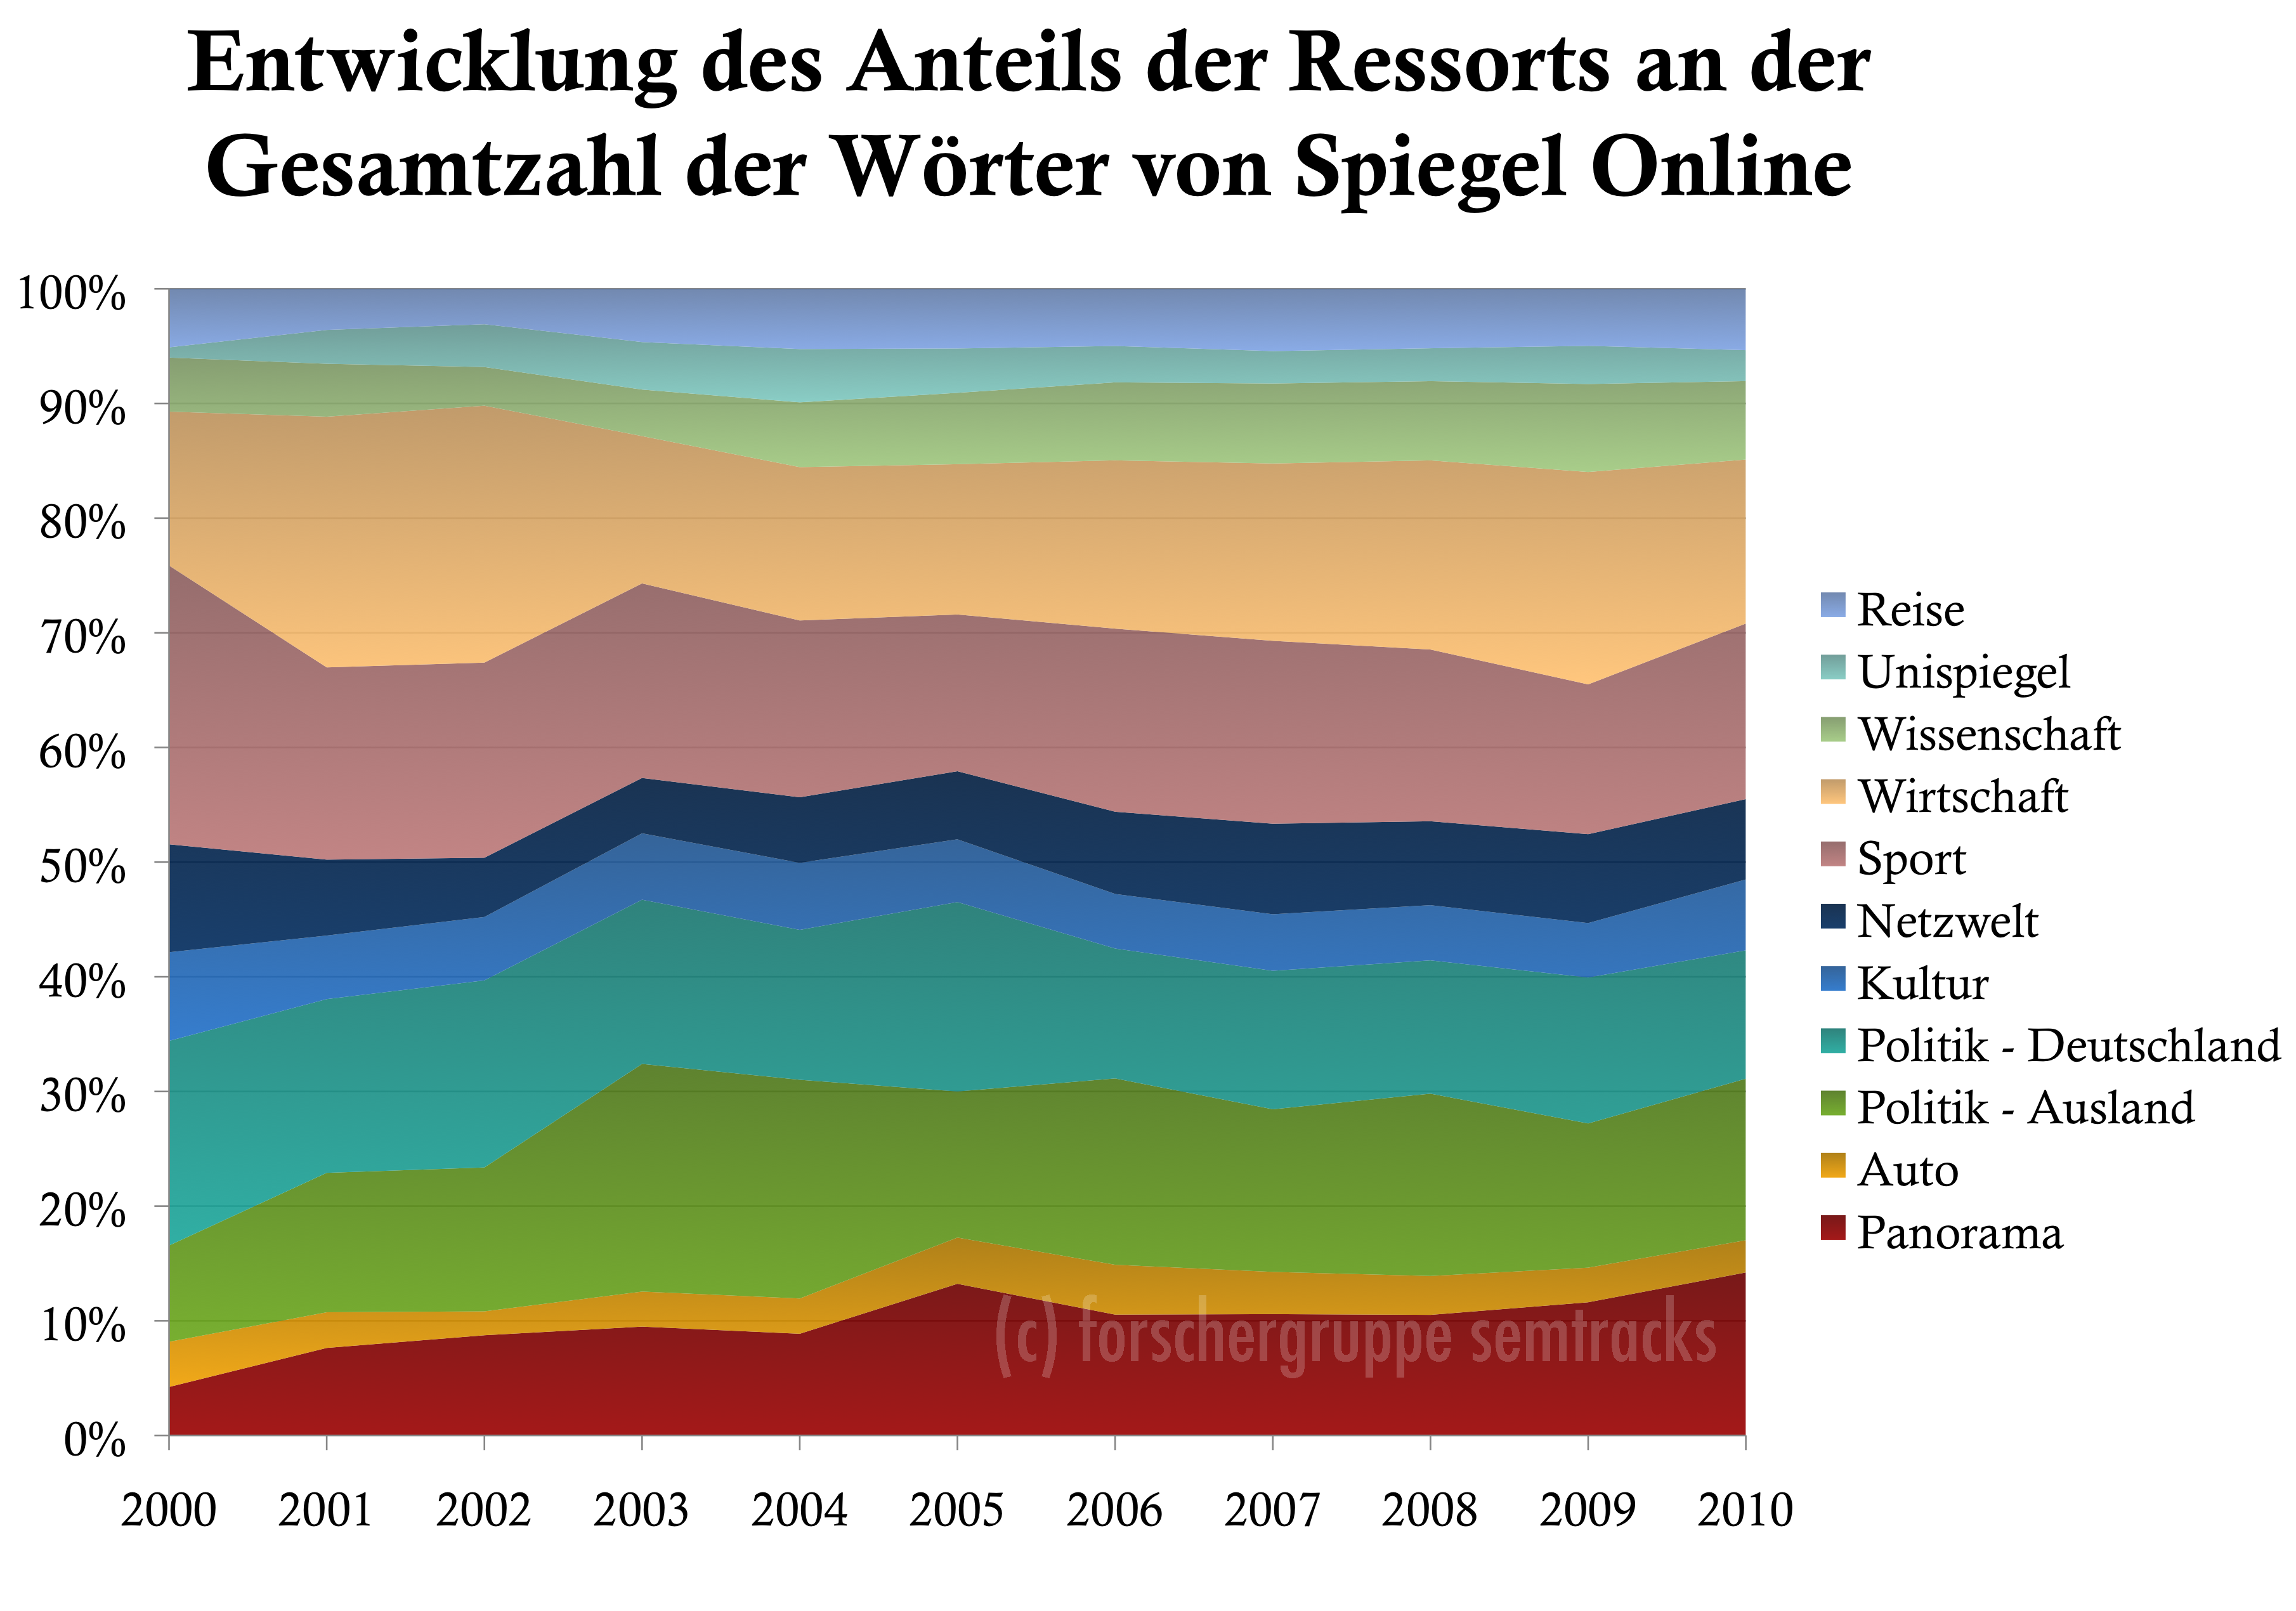 Spiegel Online: Entwicklung der Anzahl Wörter je Ressorts an der Gesamtwortzahl